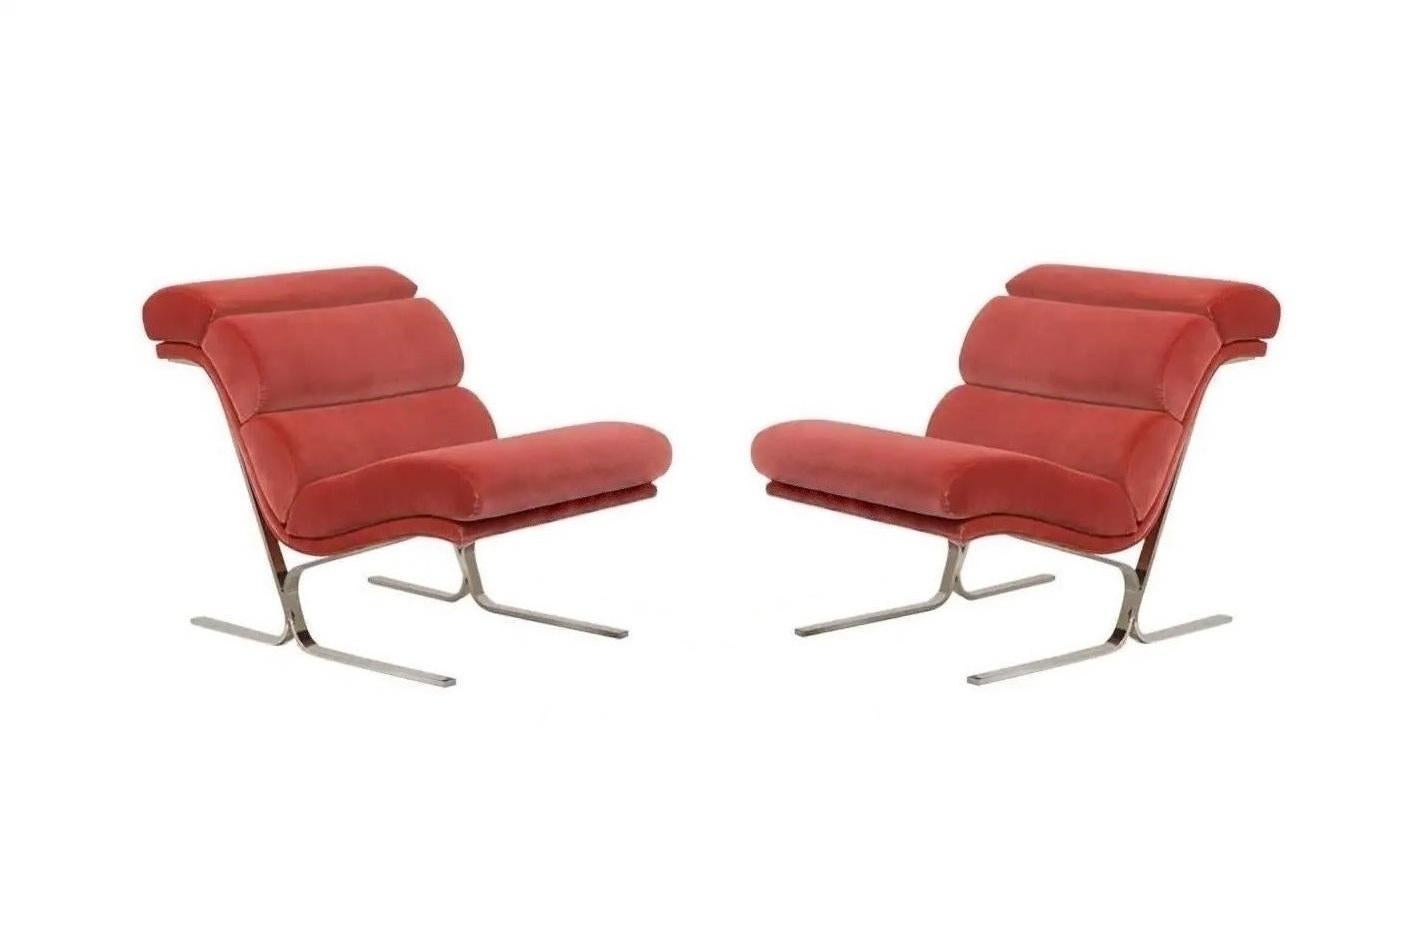 Diese modischen Sessel haben außergewöhnliche architektonische Linien und sind ebenso bequem wie optisch auffällig. Durchdacht konstruiert, um aus jedem Blickwinkel zu überzeugen. Das armlose Design und die schräge Form passen sich den Konturen